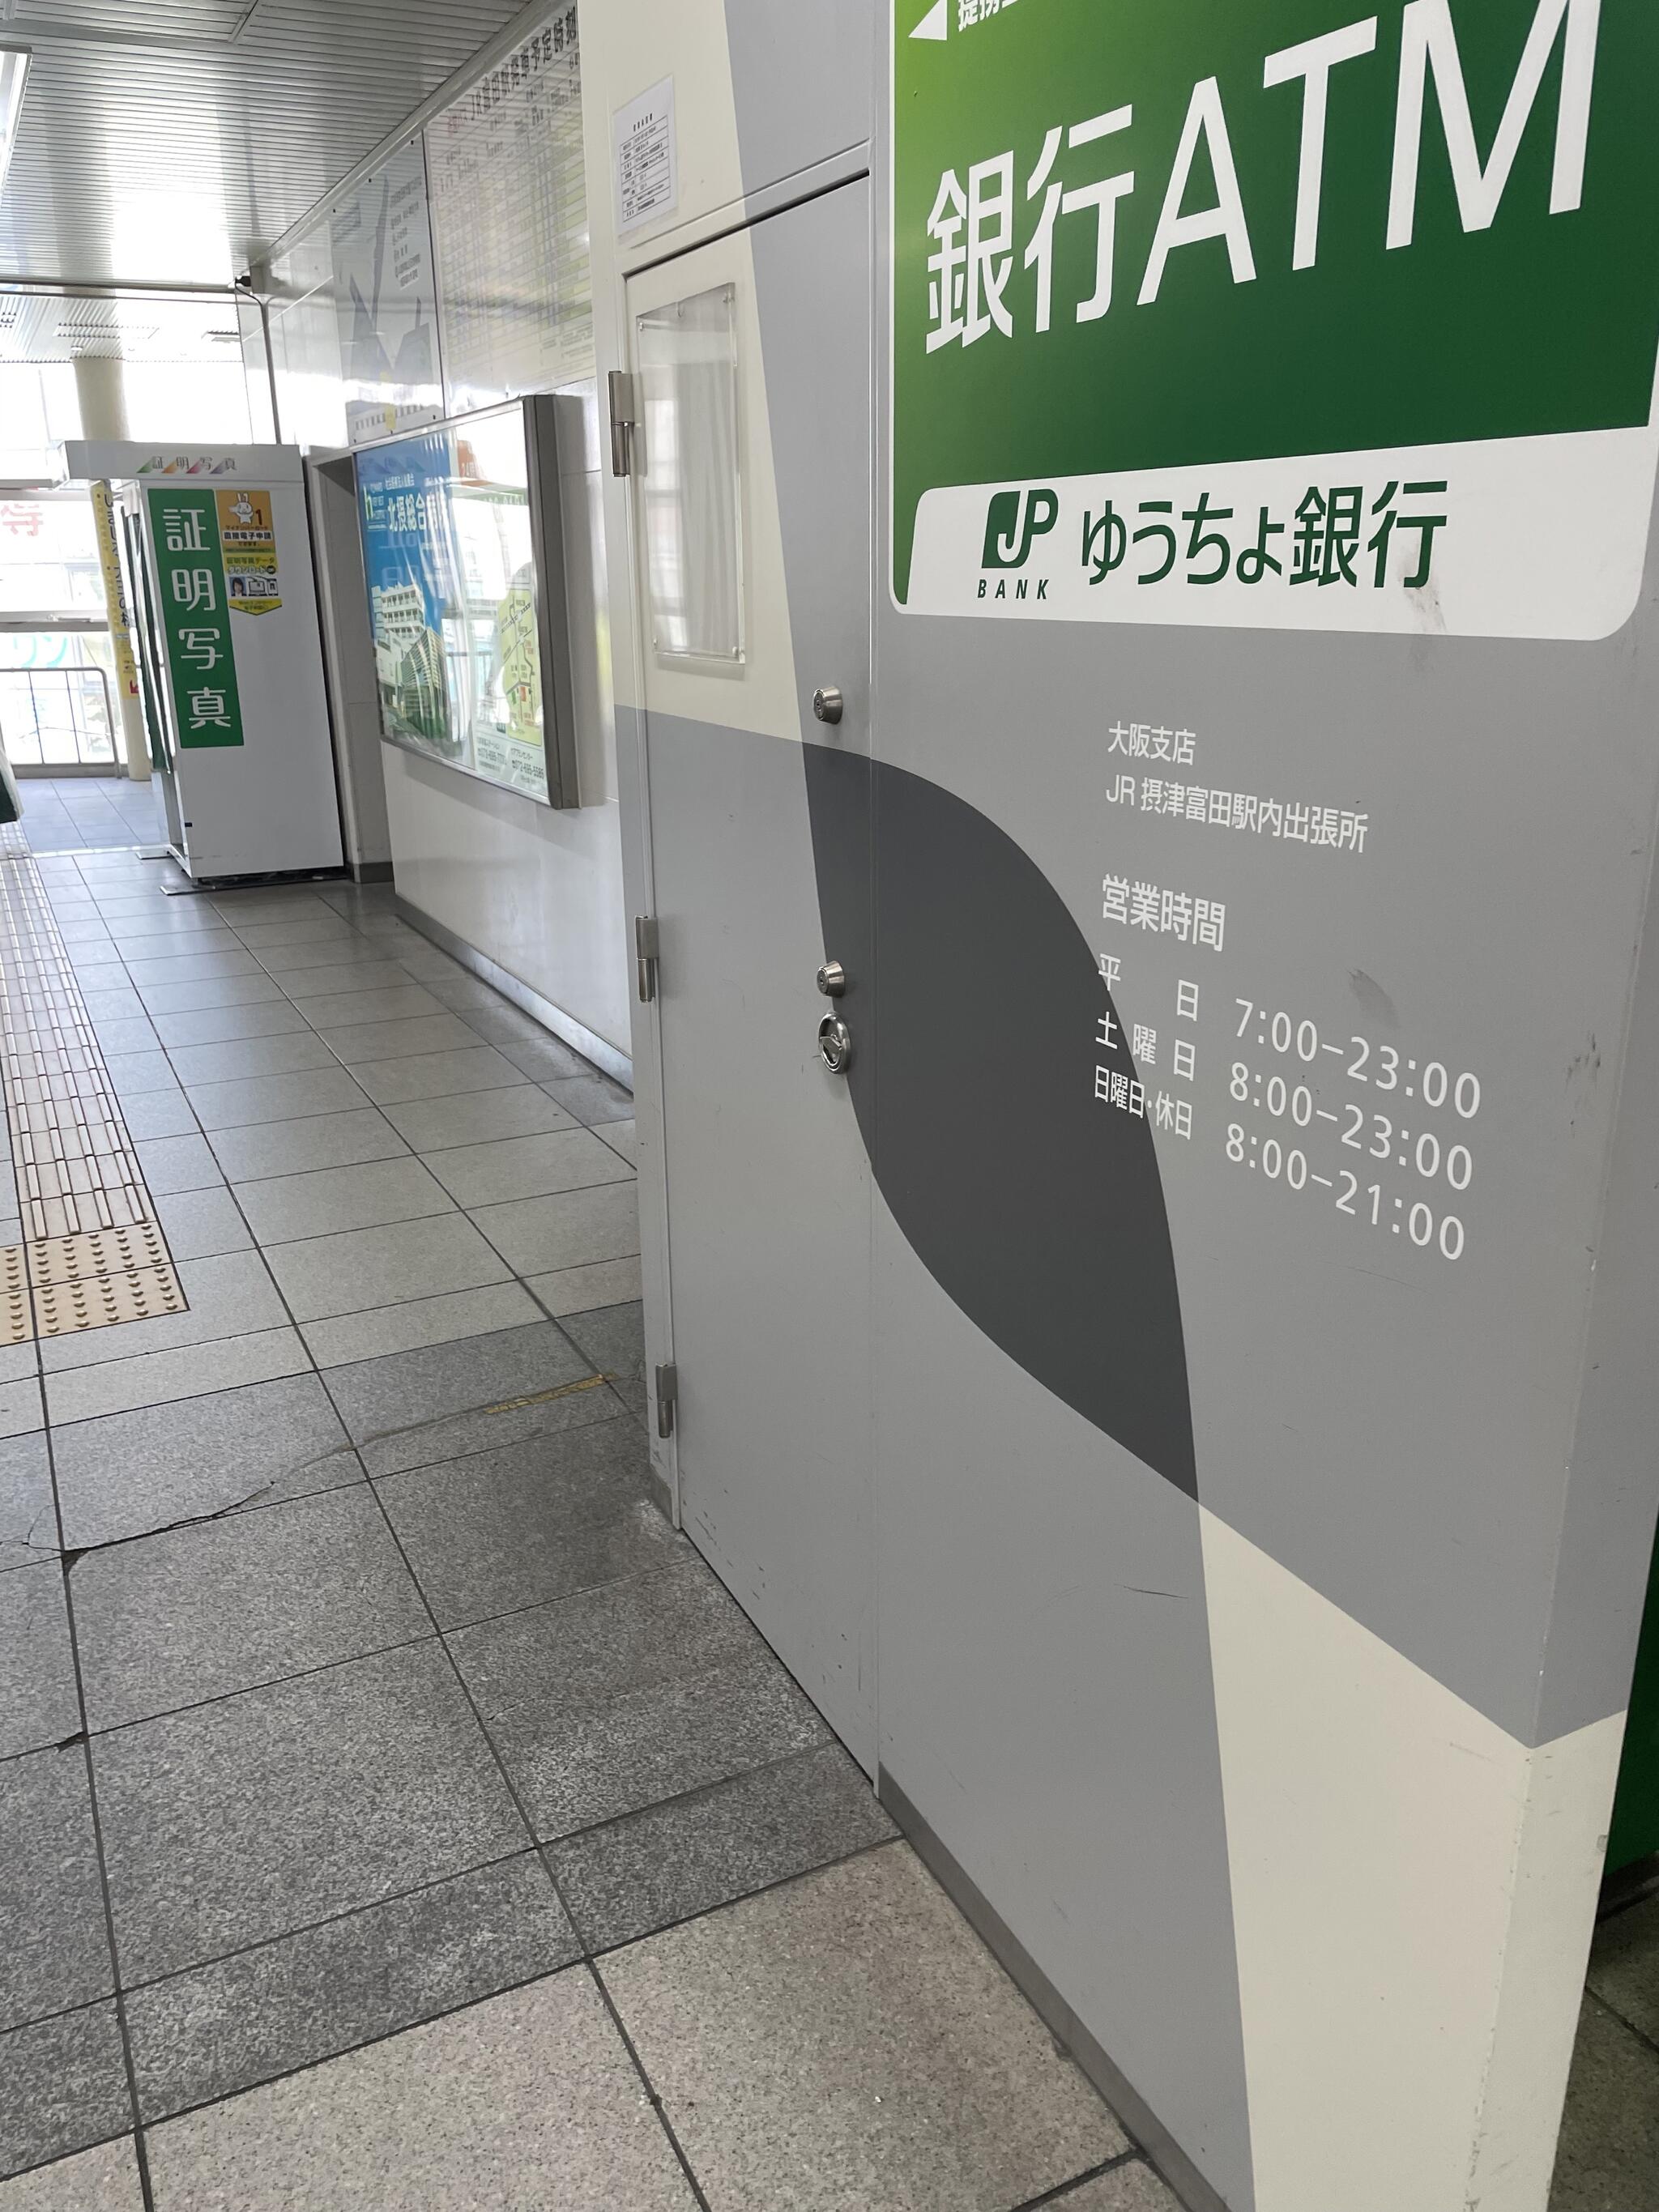 ゆうちょ銀行 ATM JR摂津富田駅内出張所の代表写真5